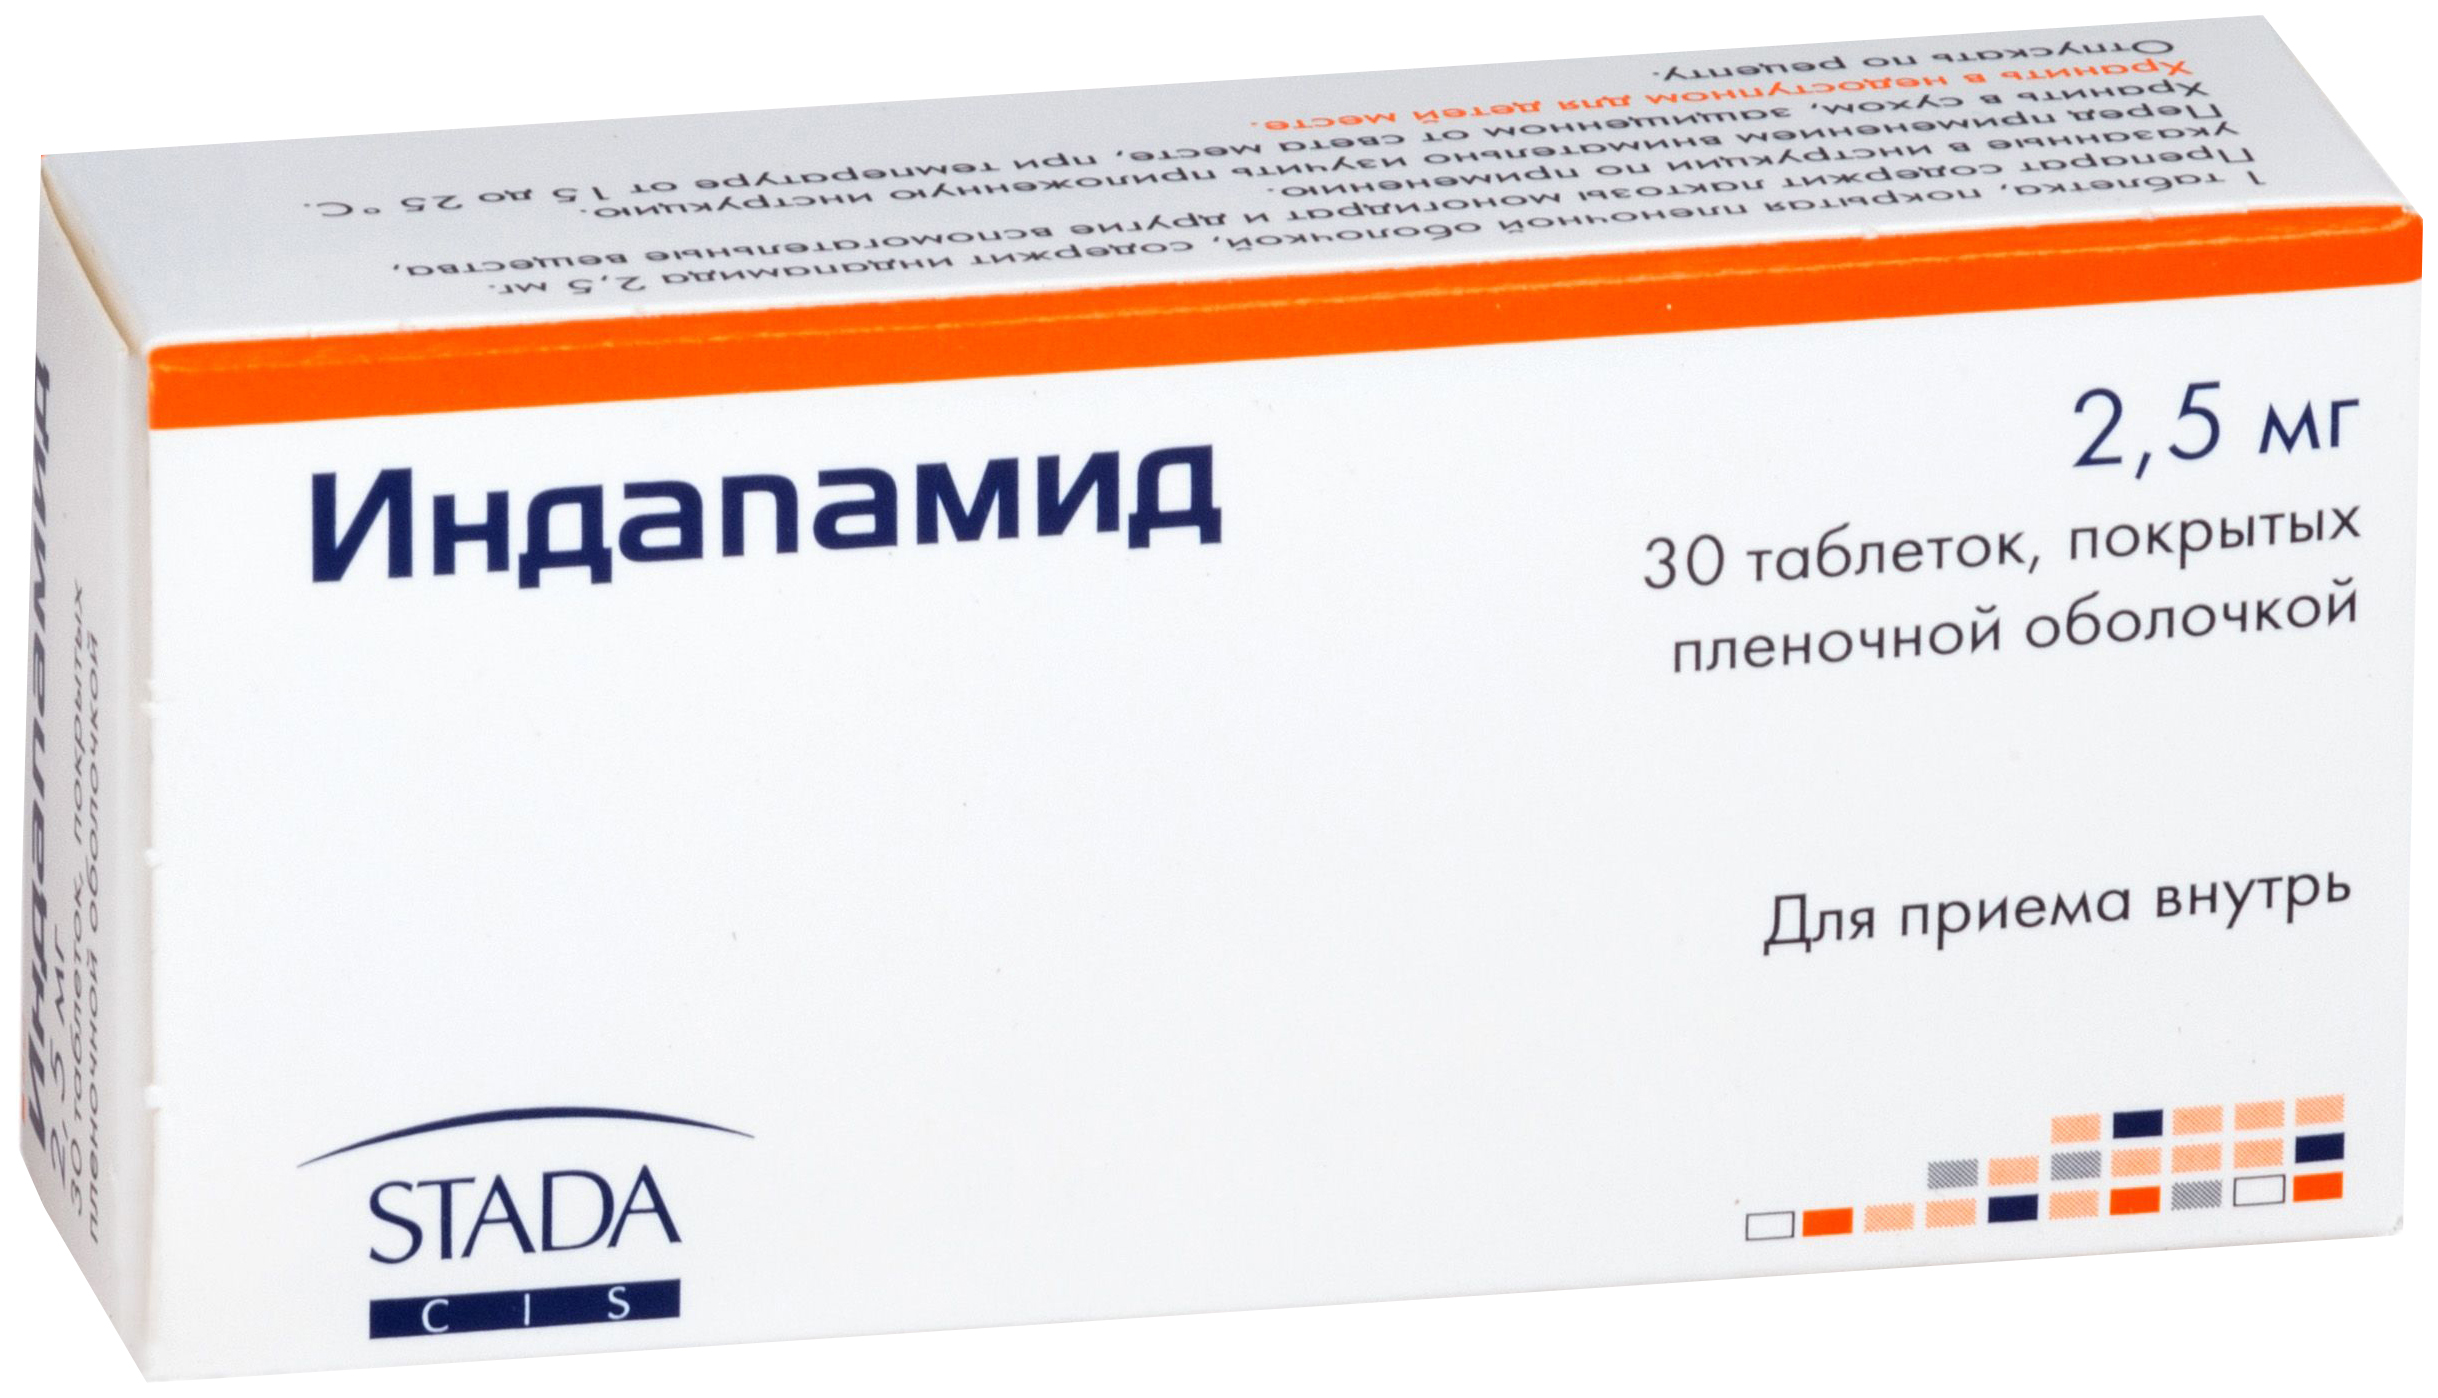 Индапамид ШТАДА таблетки 2.5 мг 30 шт.